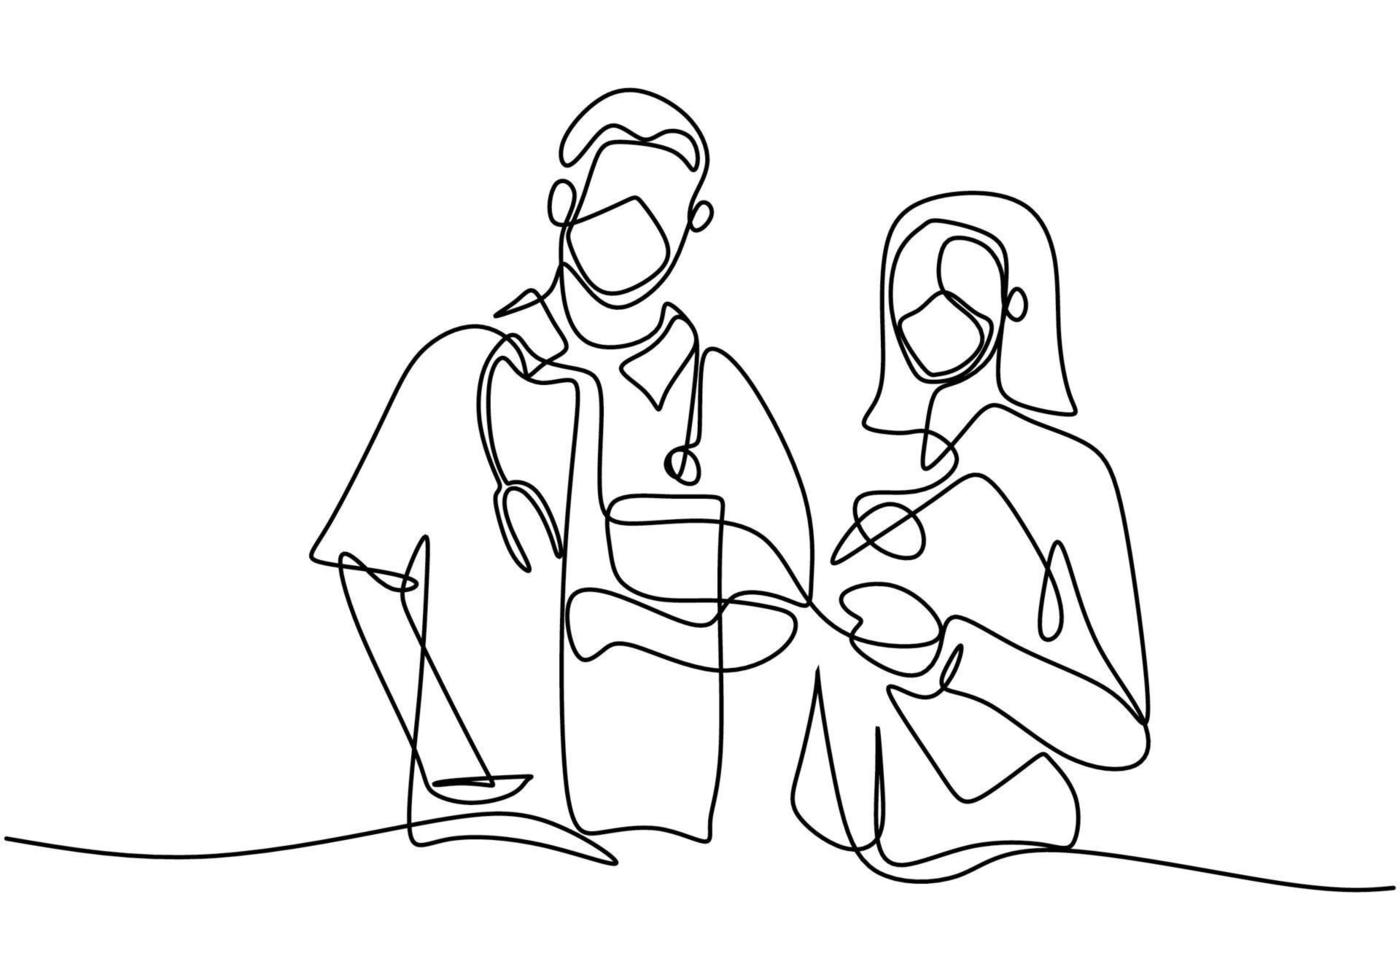 Un seul dessin au trait d'un médecin professionnel et d'une infirmière en masque facial debout posant ensemble travail d'équipe médical contre le coronavirus isolé sur fond blanc. style minimaliste. vecteur